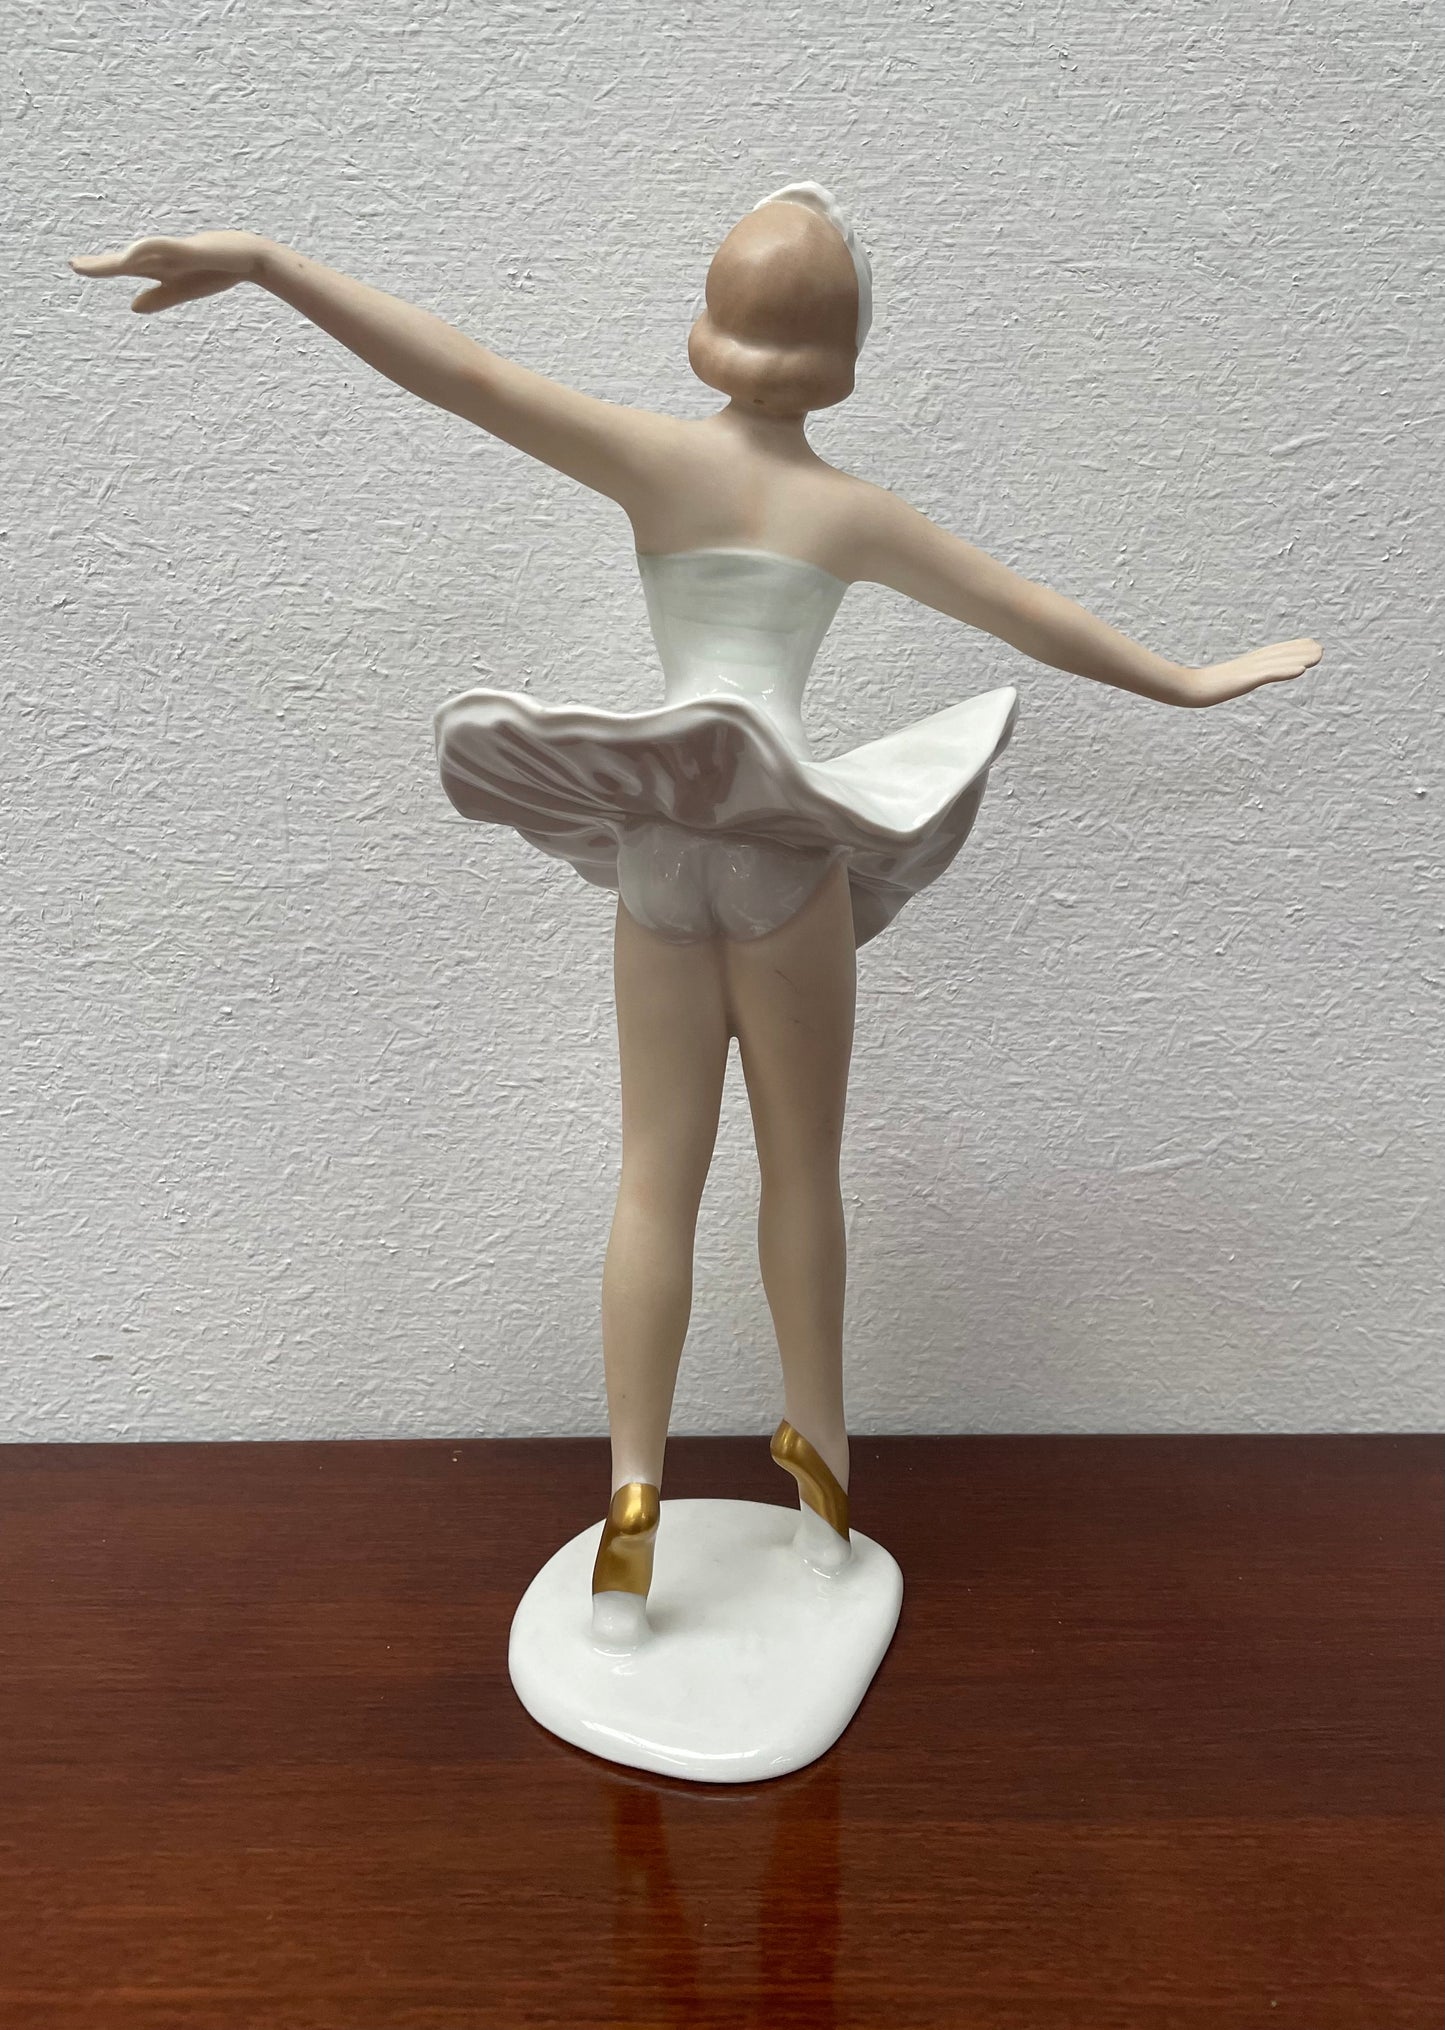 Vintage Wallendorf Standing Ballerina